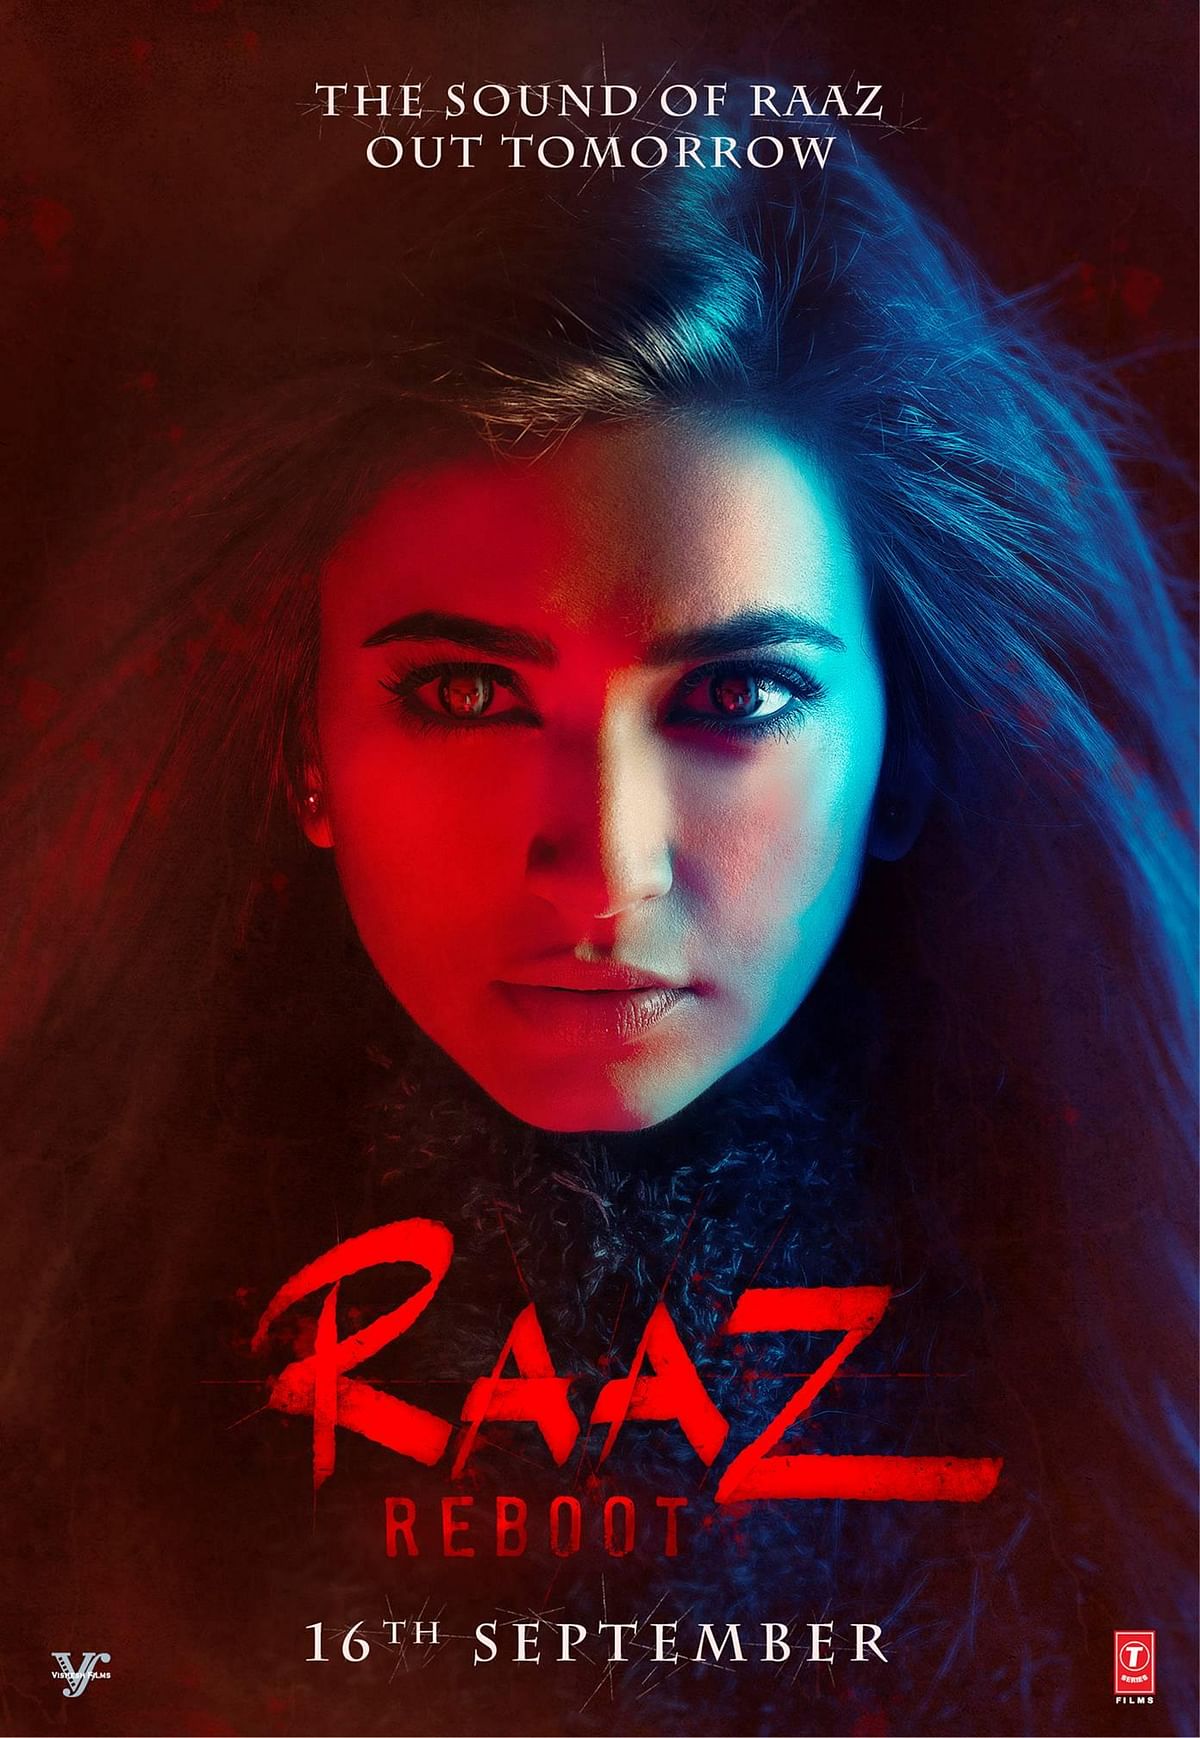 Emraan  Hashmi and Kriti Kharbanda are the faces of the ‘Raaz Reboot’ poster